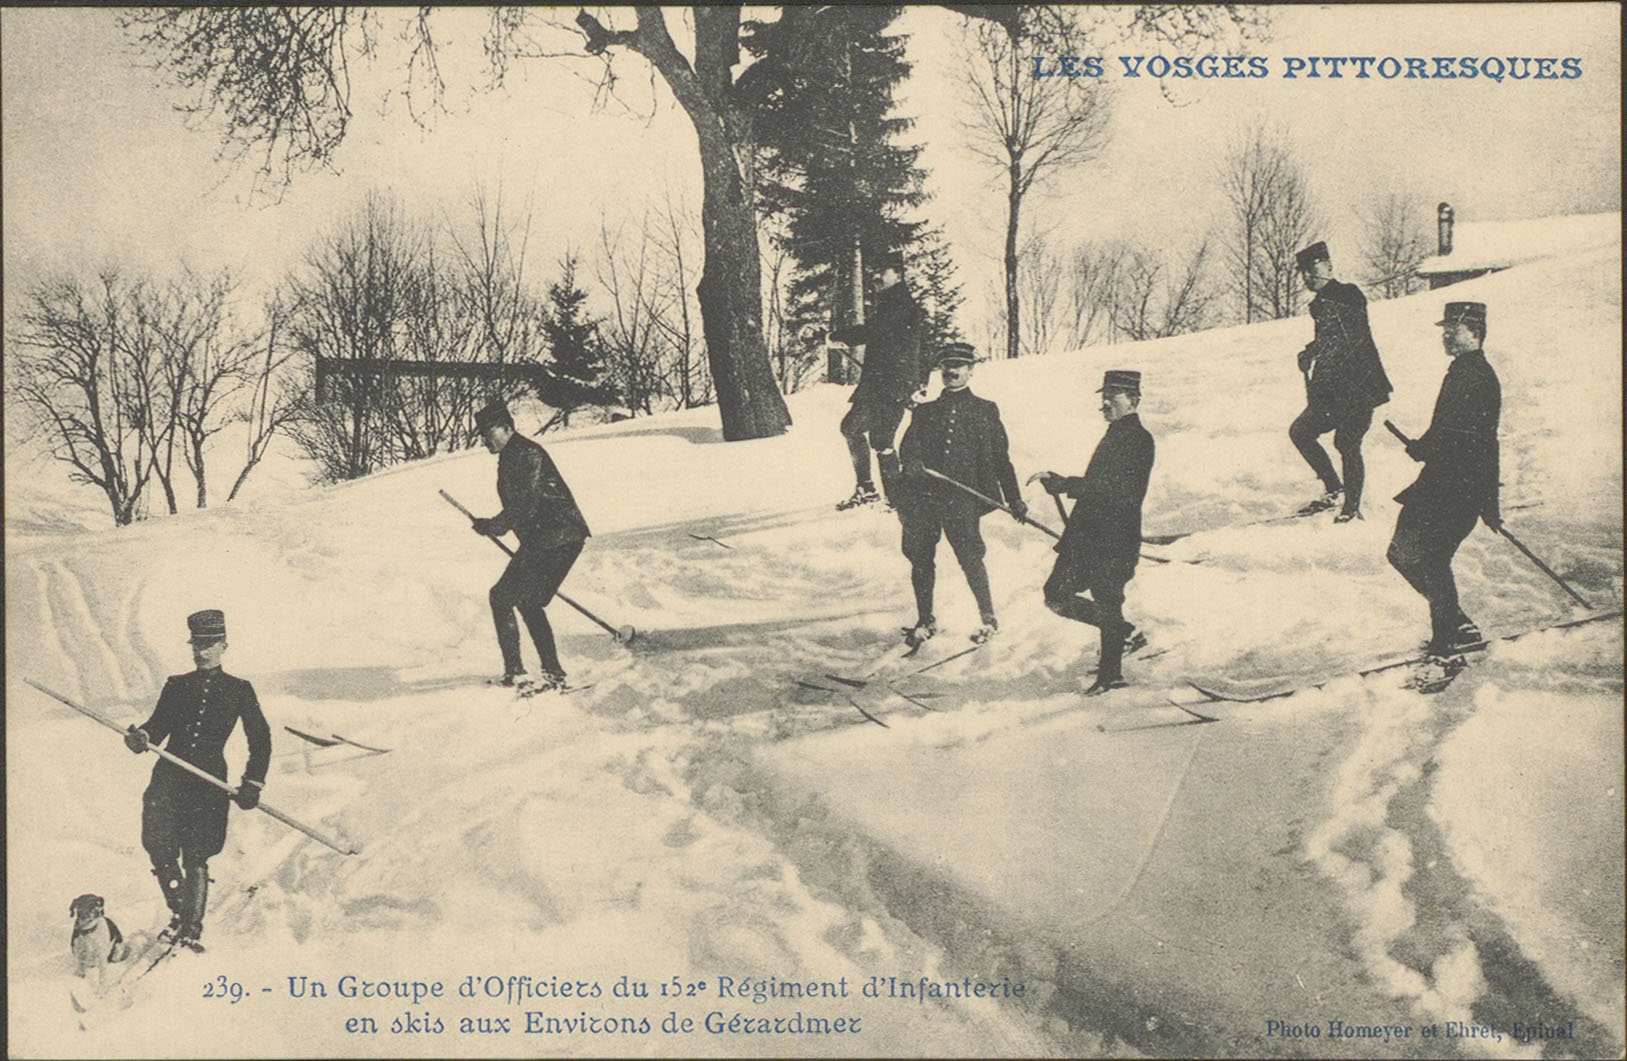 Contenu du Un groupe d'Officiers du 152e Régiment d'infanterie en skis aux environs de Gérardmer